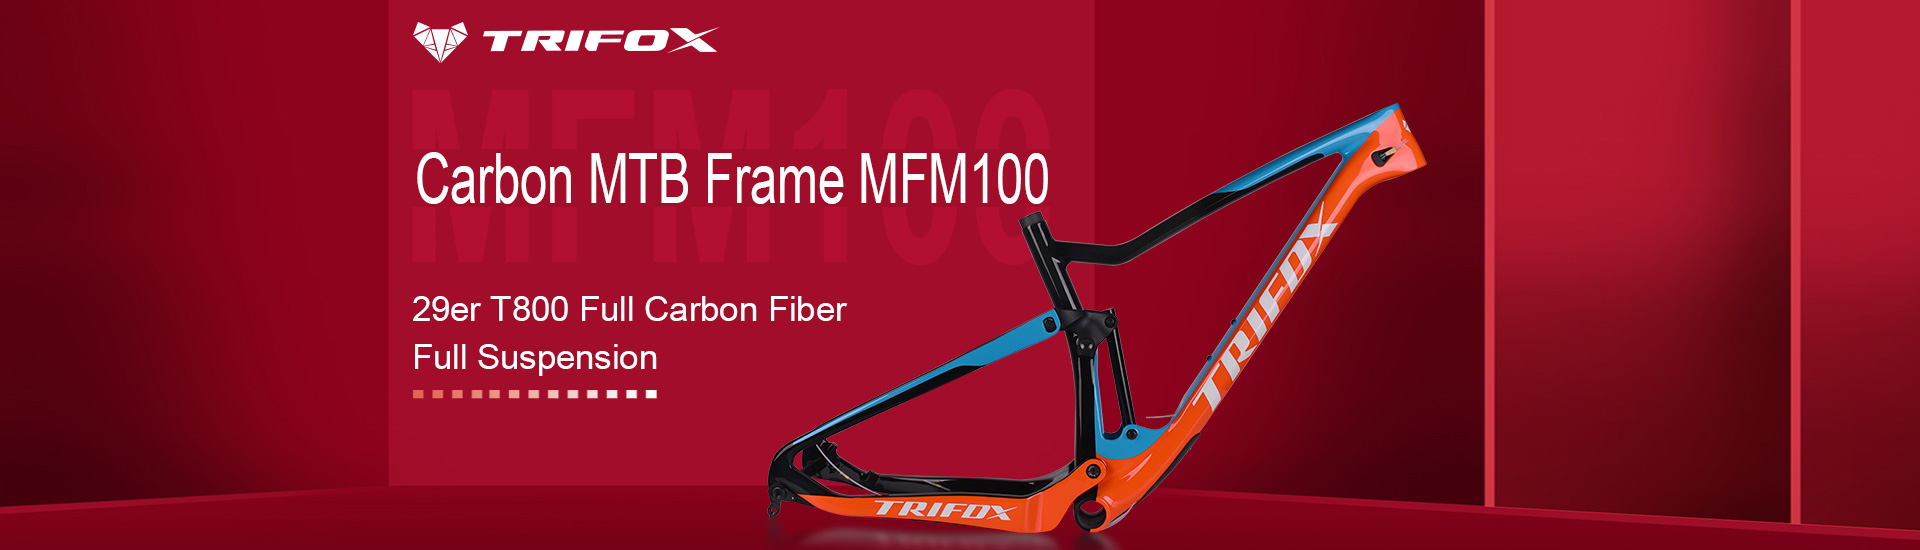 Trifox Bike 29er Full Suspension Carbon MTB Frame MFM100 Home Banner